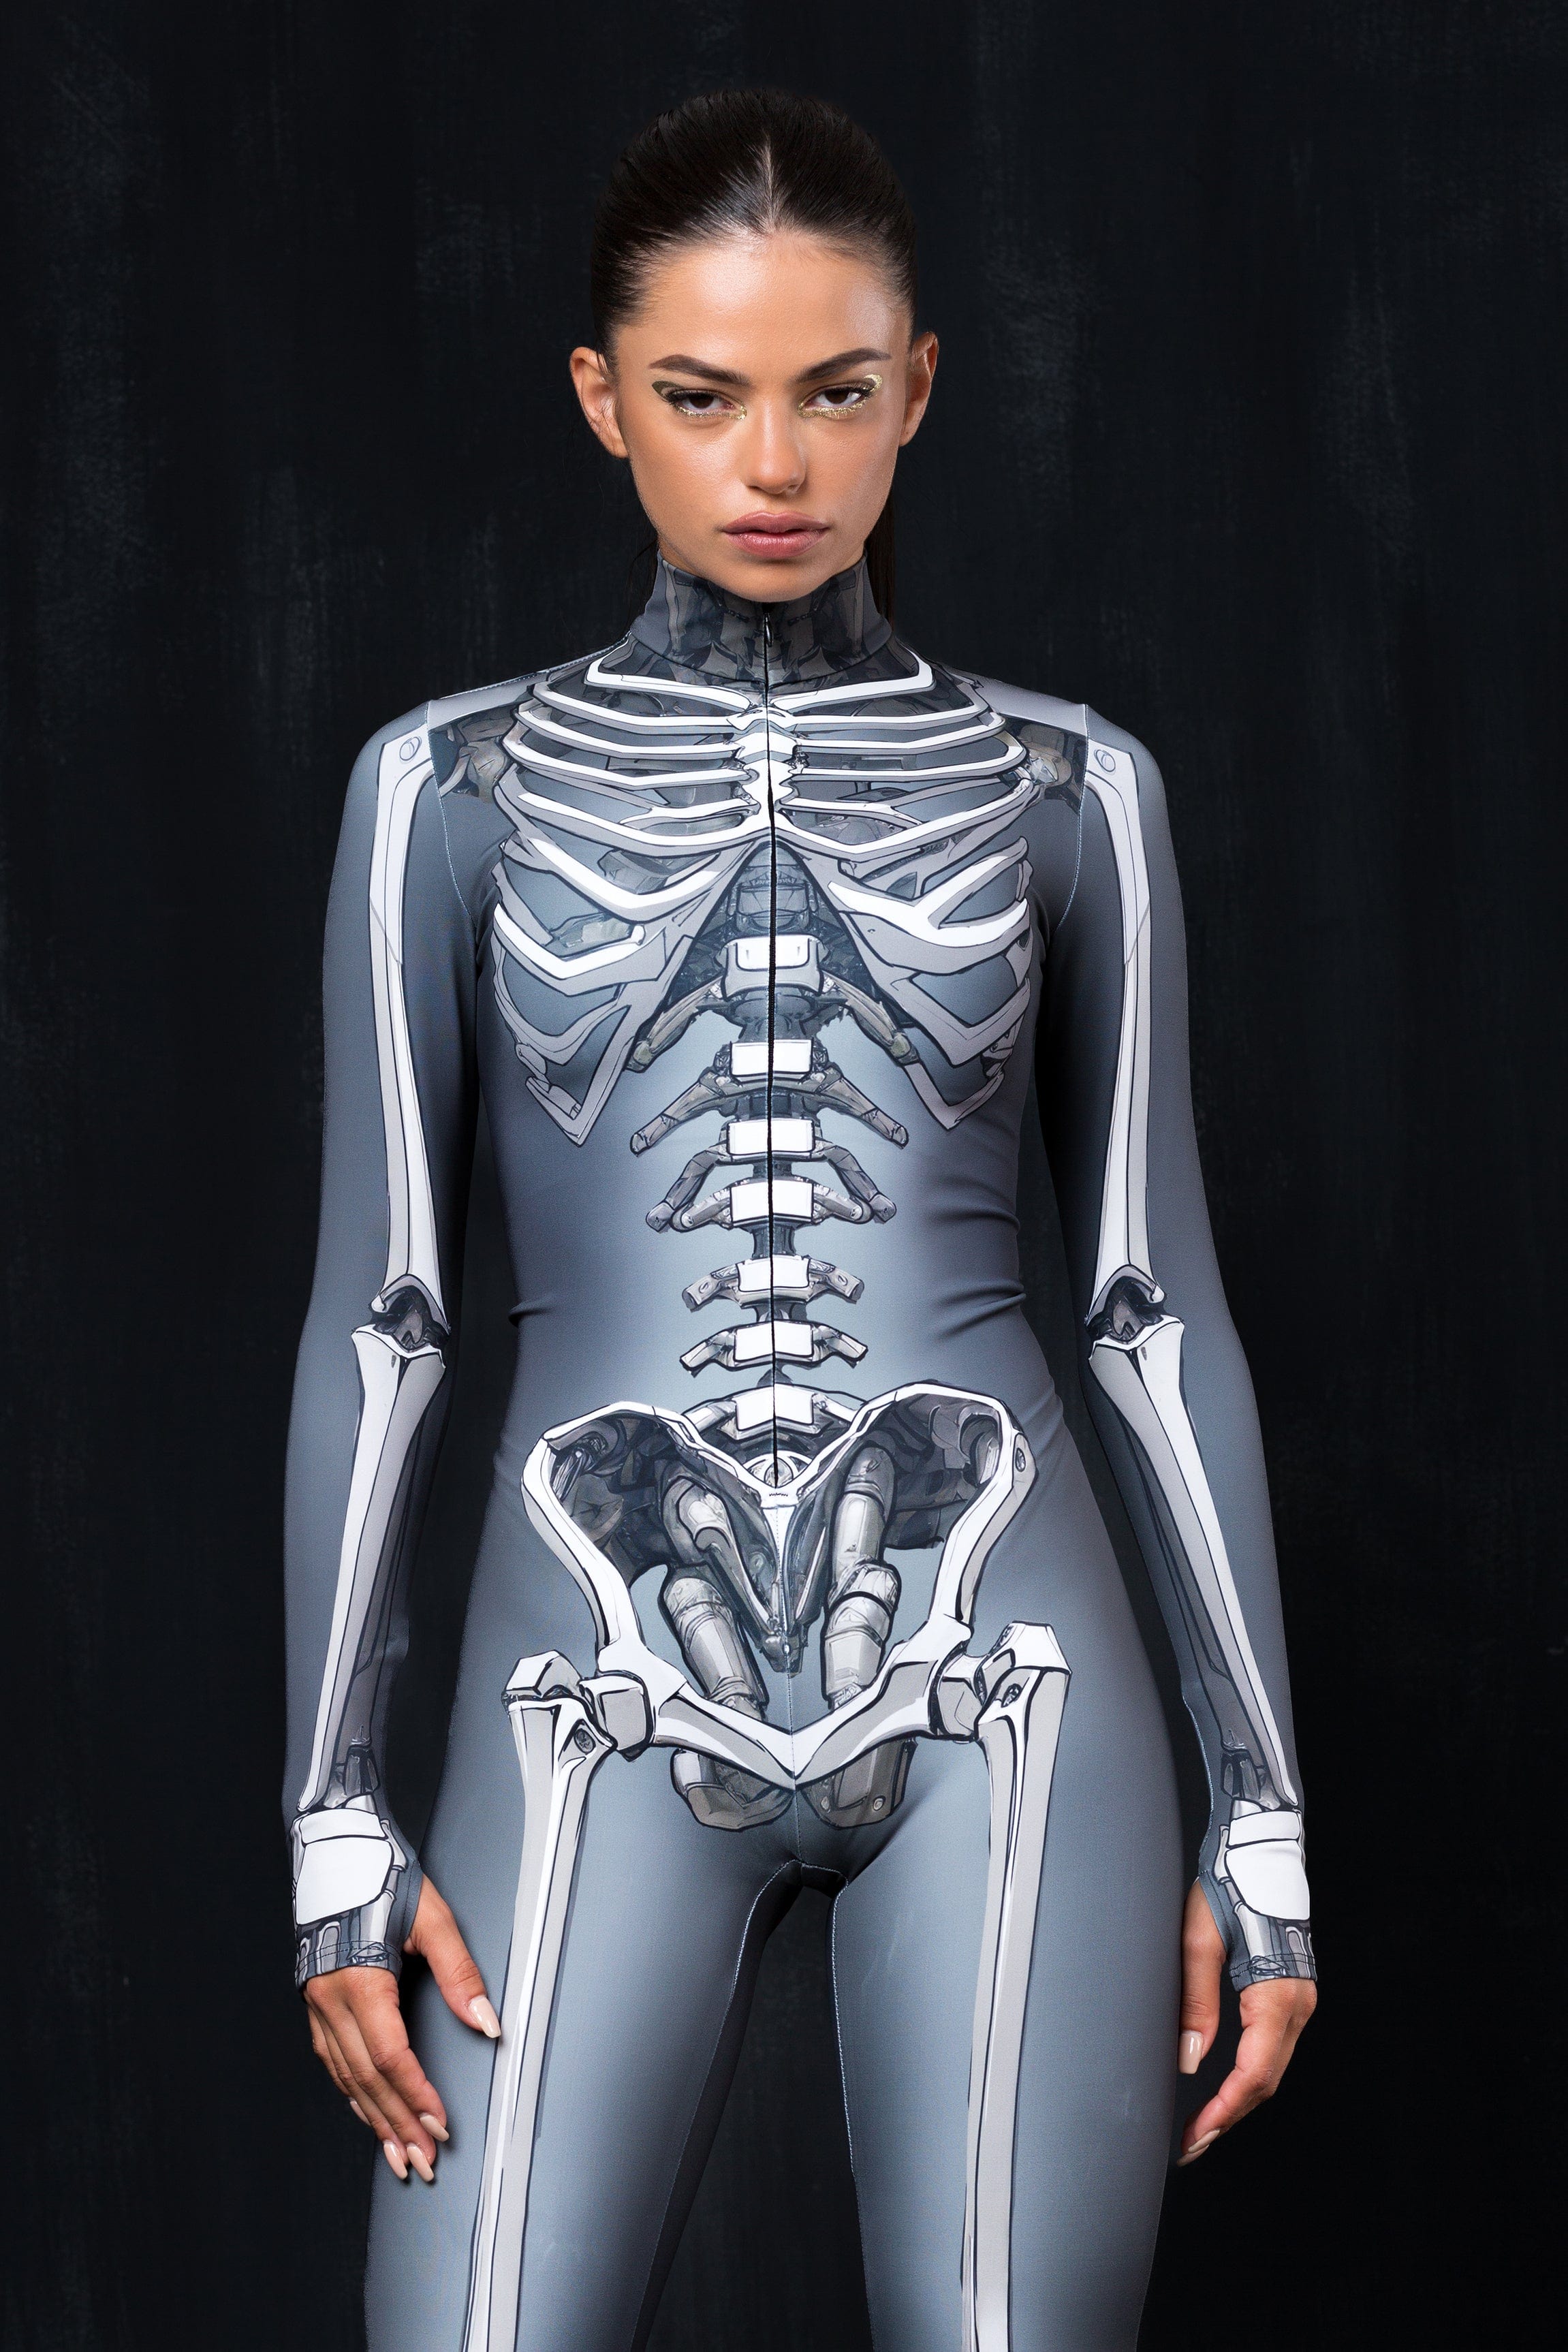 Ms. Bones Costume